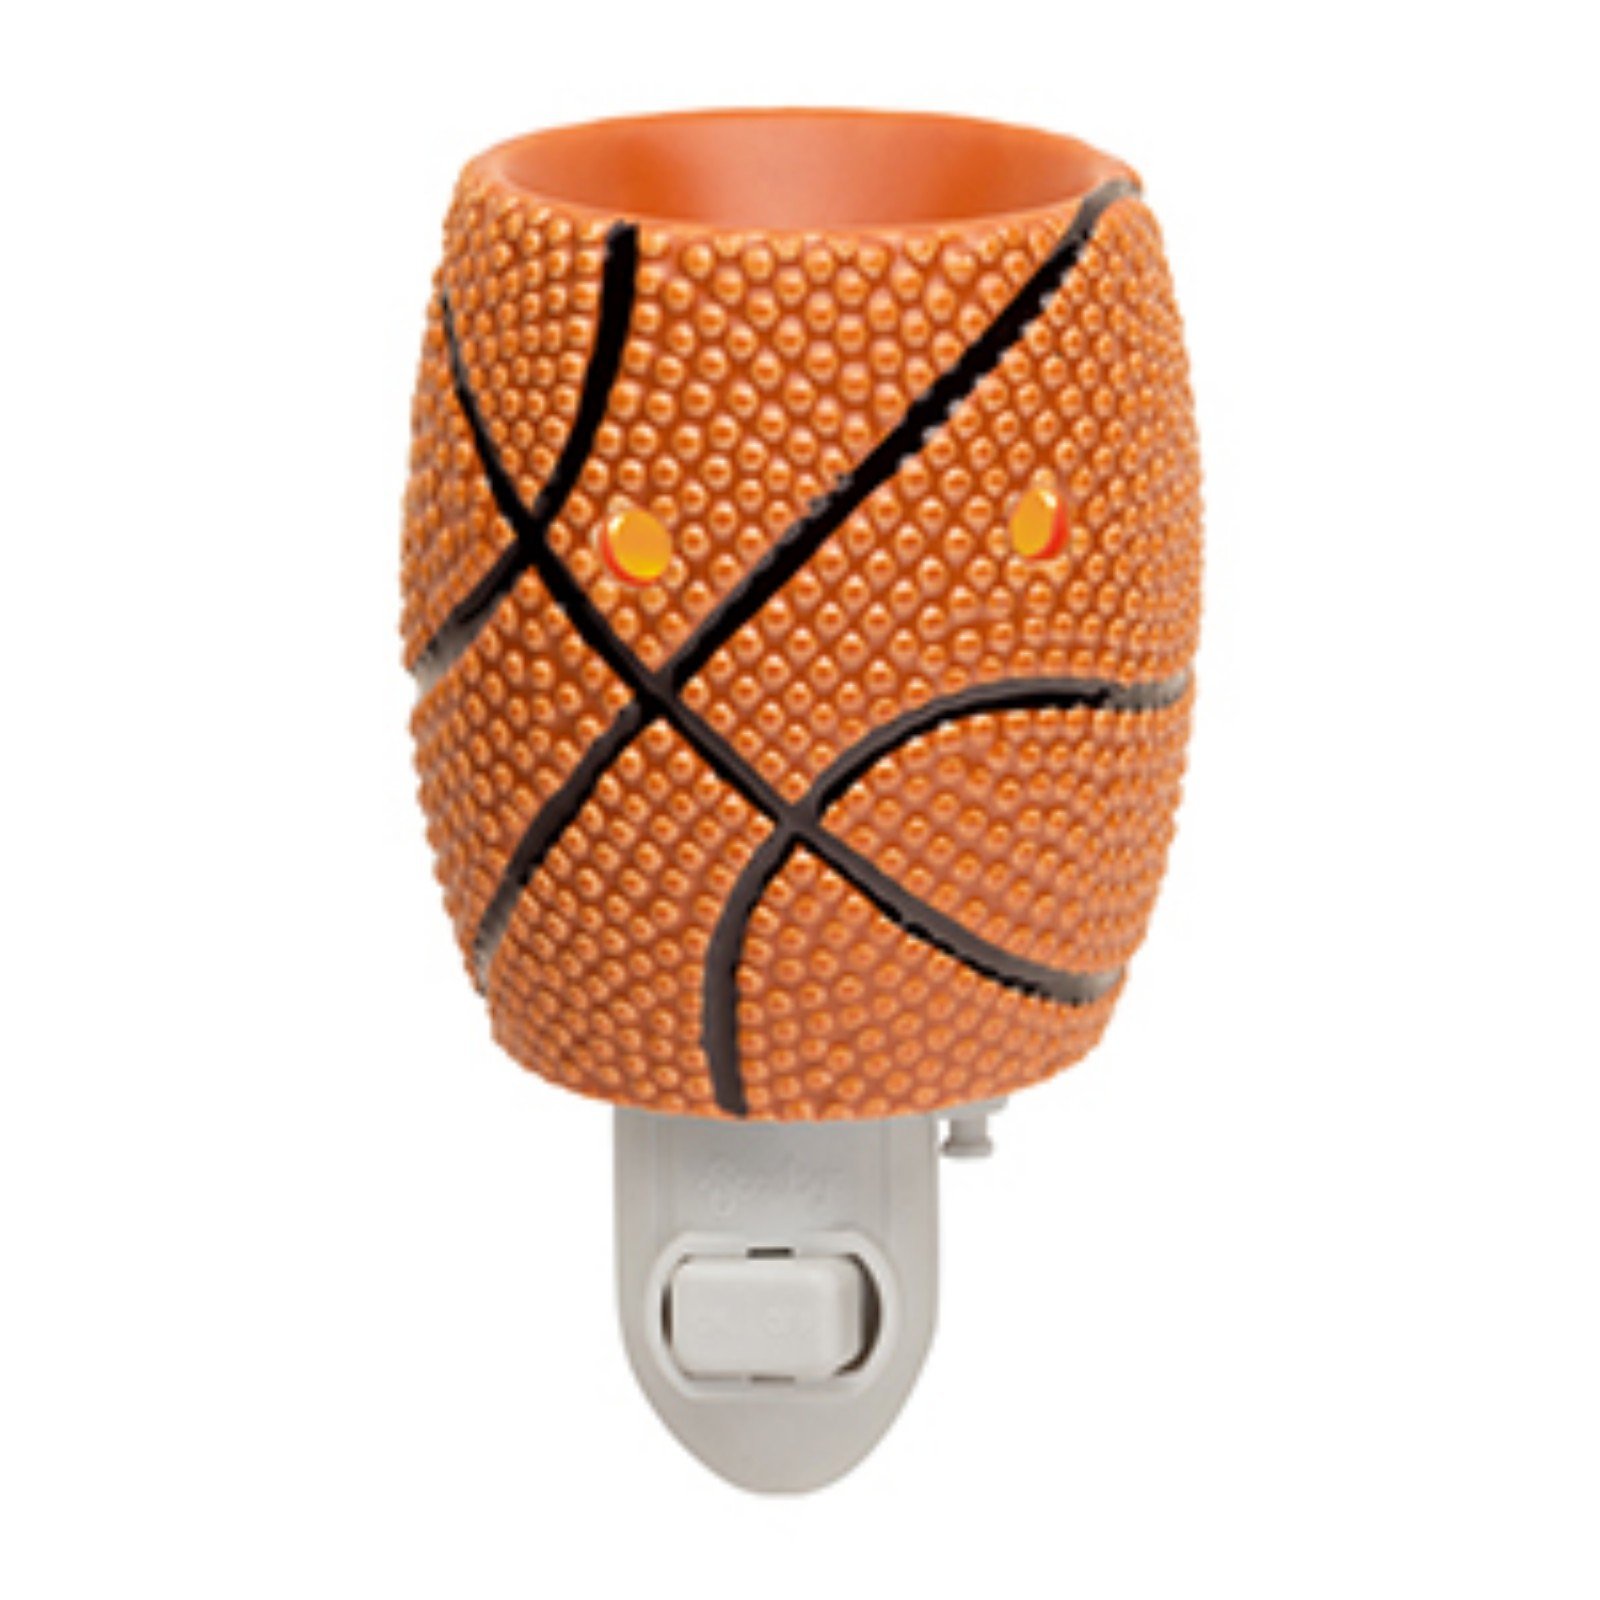 Scentsy Slam Dunk Basketball Mini Plug-In Warmer (New) 1GheWcC1c